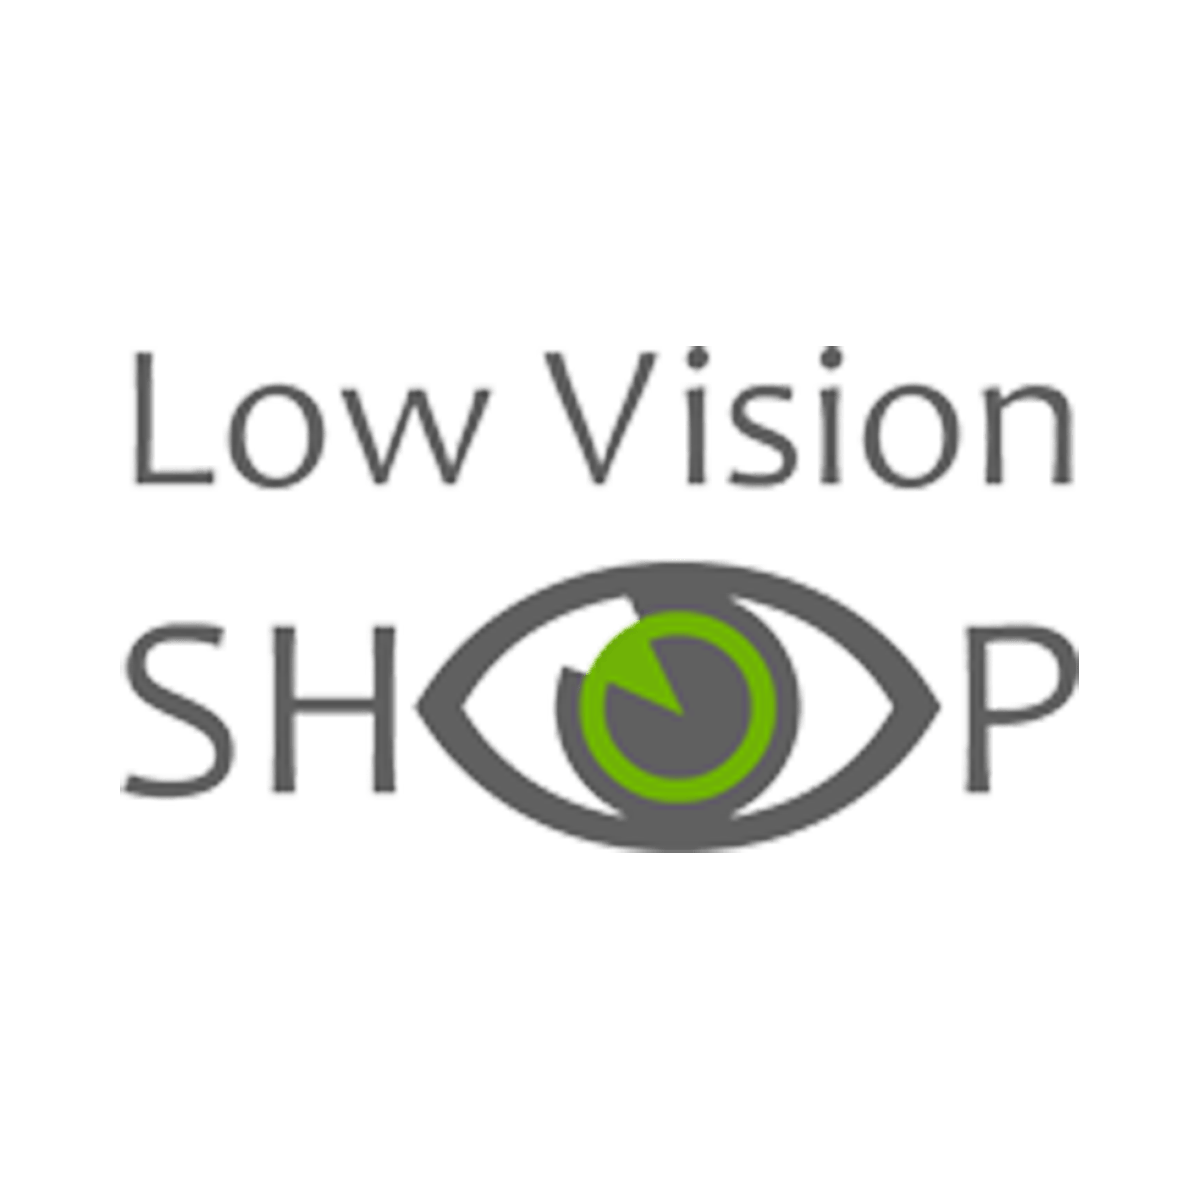 XXL Gezelschapsspel bestellen | Vision Shop